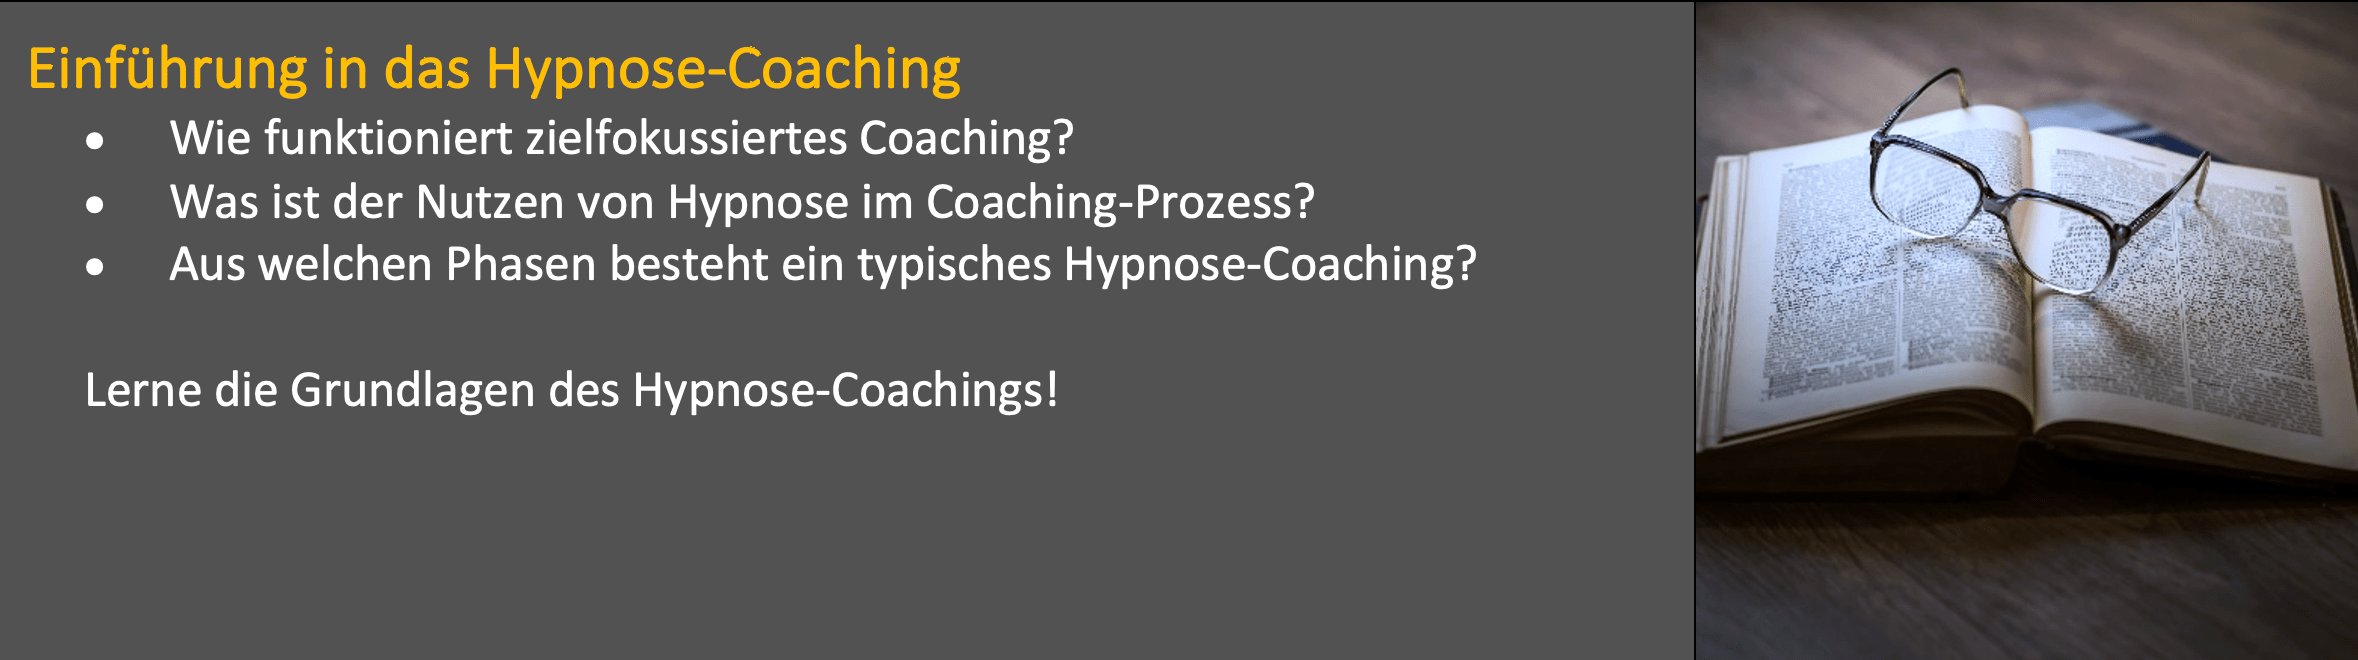 Einführung Hypnose-Coaching